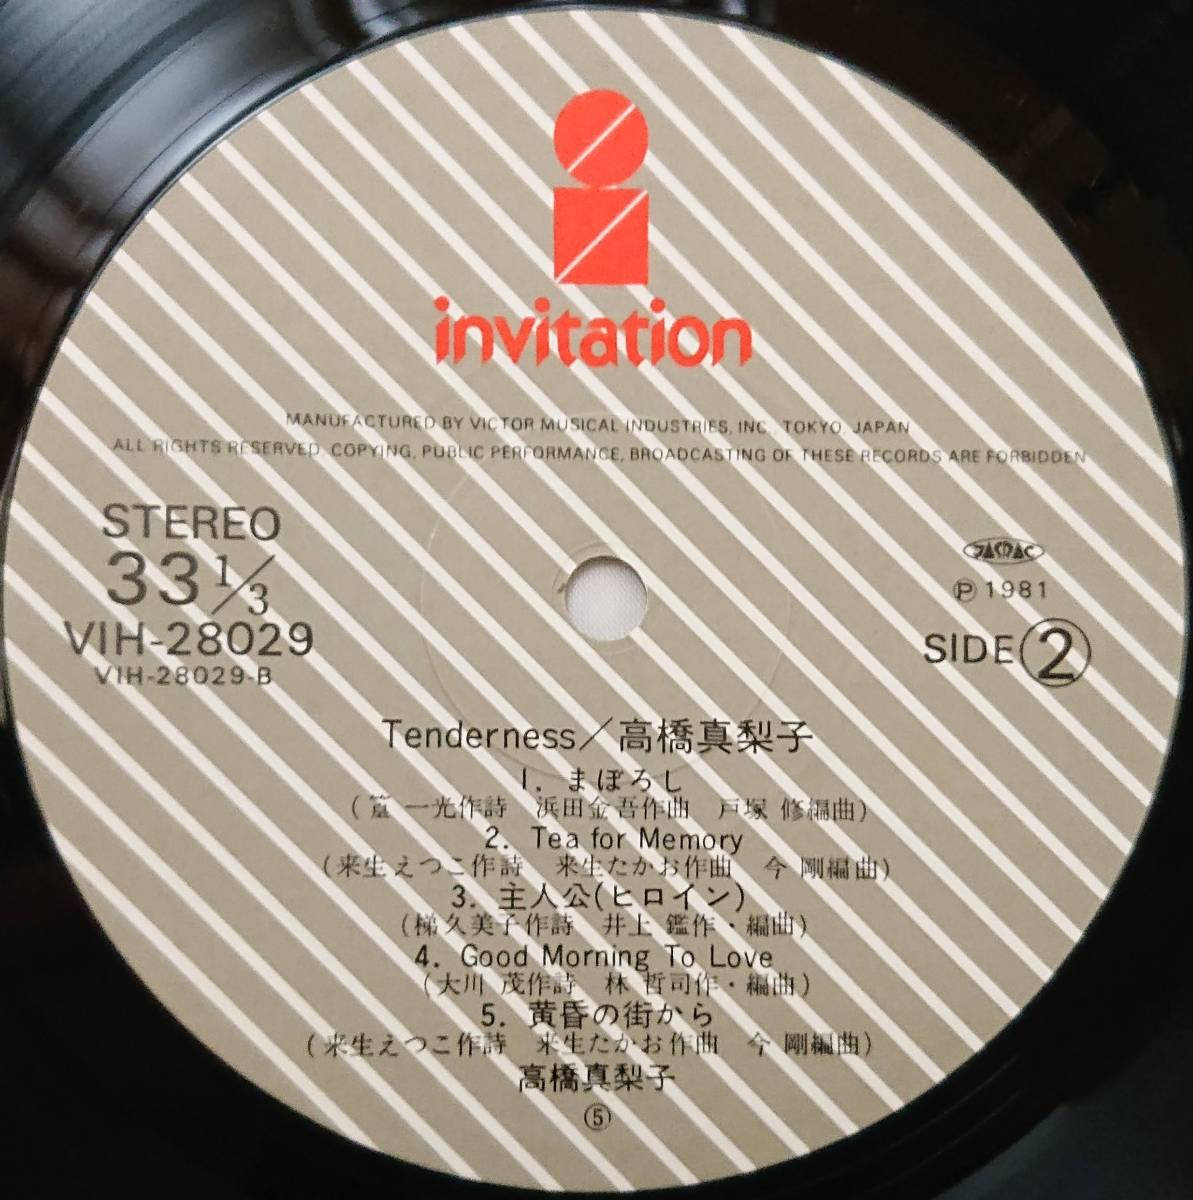 高橋真梨子 : Tenderness テンダネス 帯なし 国内盤 中古 アナログ LPレコード盤 1981年 VIH-28029 M2-KDO-61_画像6